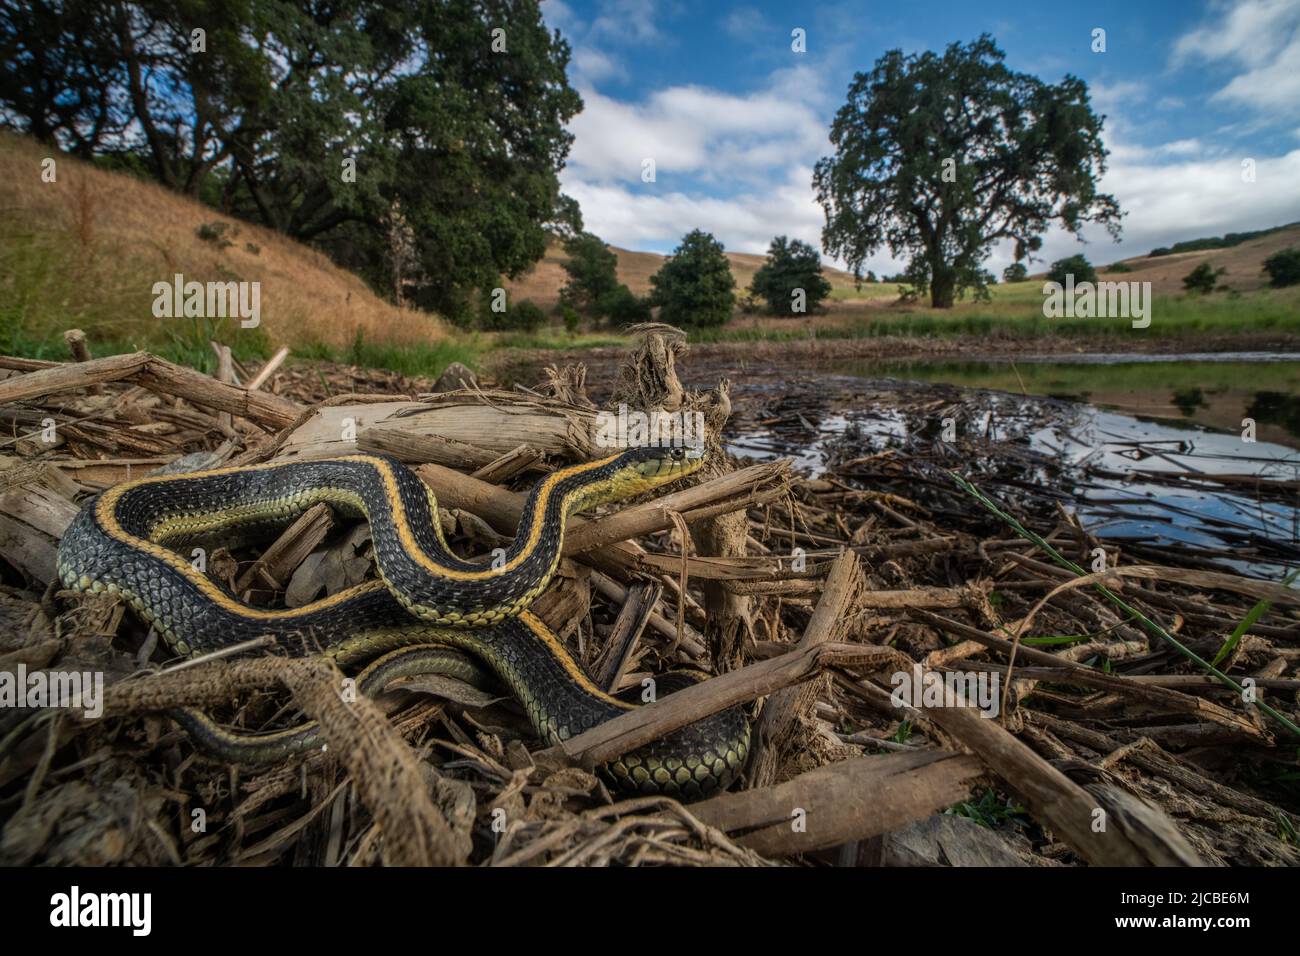 Diablo Range Gartersnake (Thamnophis atratus zaxanthus). Le serpent se trouve près d'un étang dans la région de la baie de San Francisco, en Californie, aux États-Unis. Banque D'Images